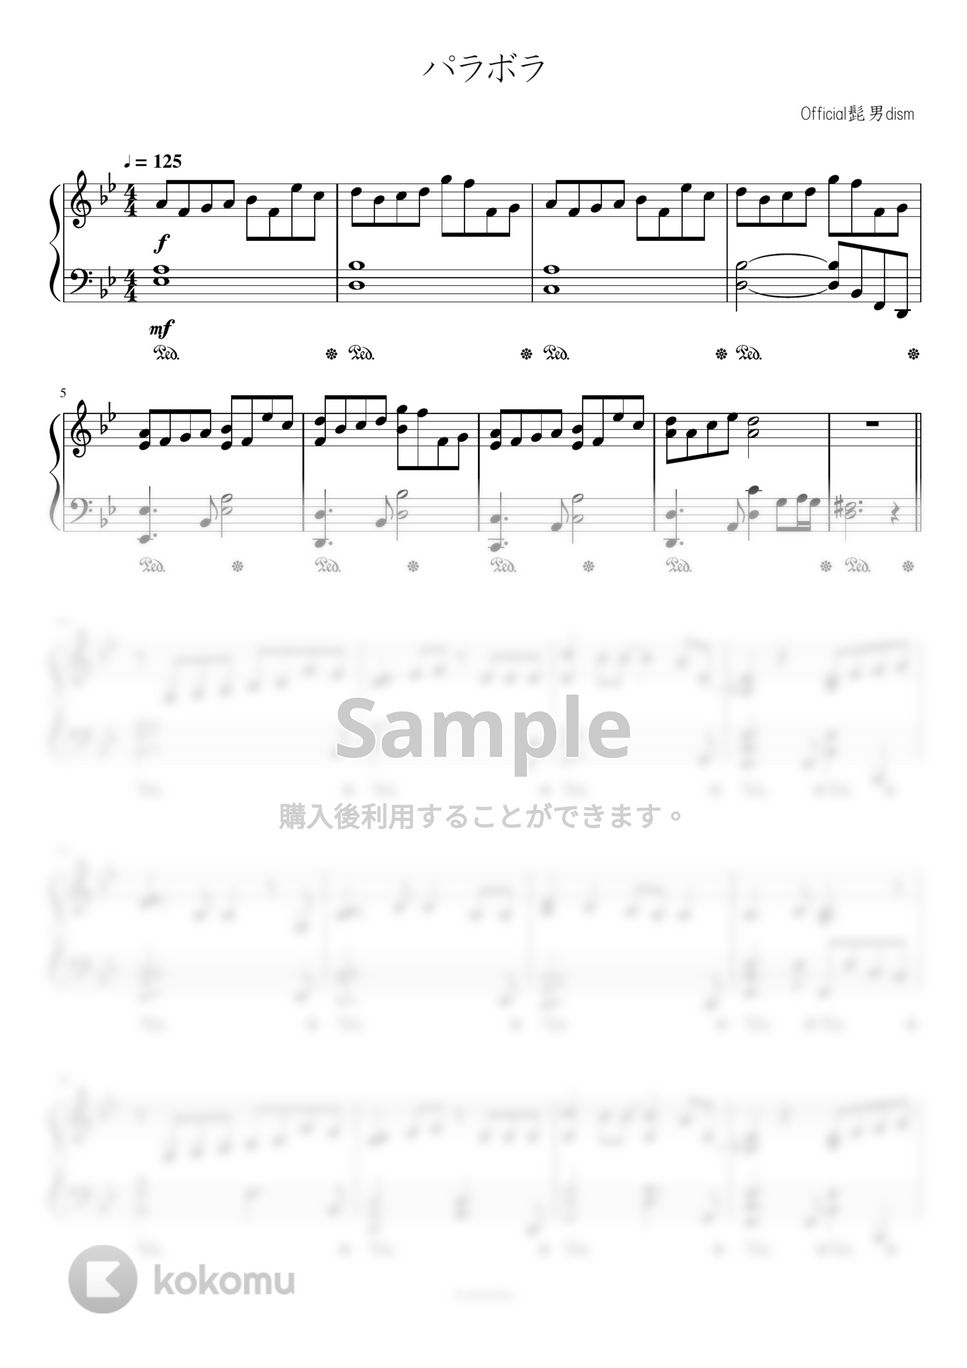 Official髭男dism - パラボラ (カルピスウォーターCMテーマ) by Trohishima